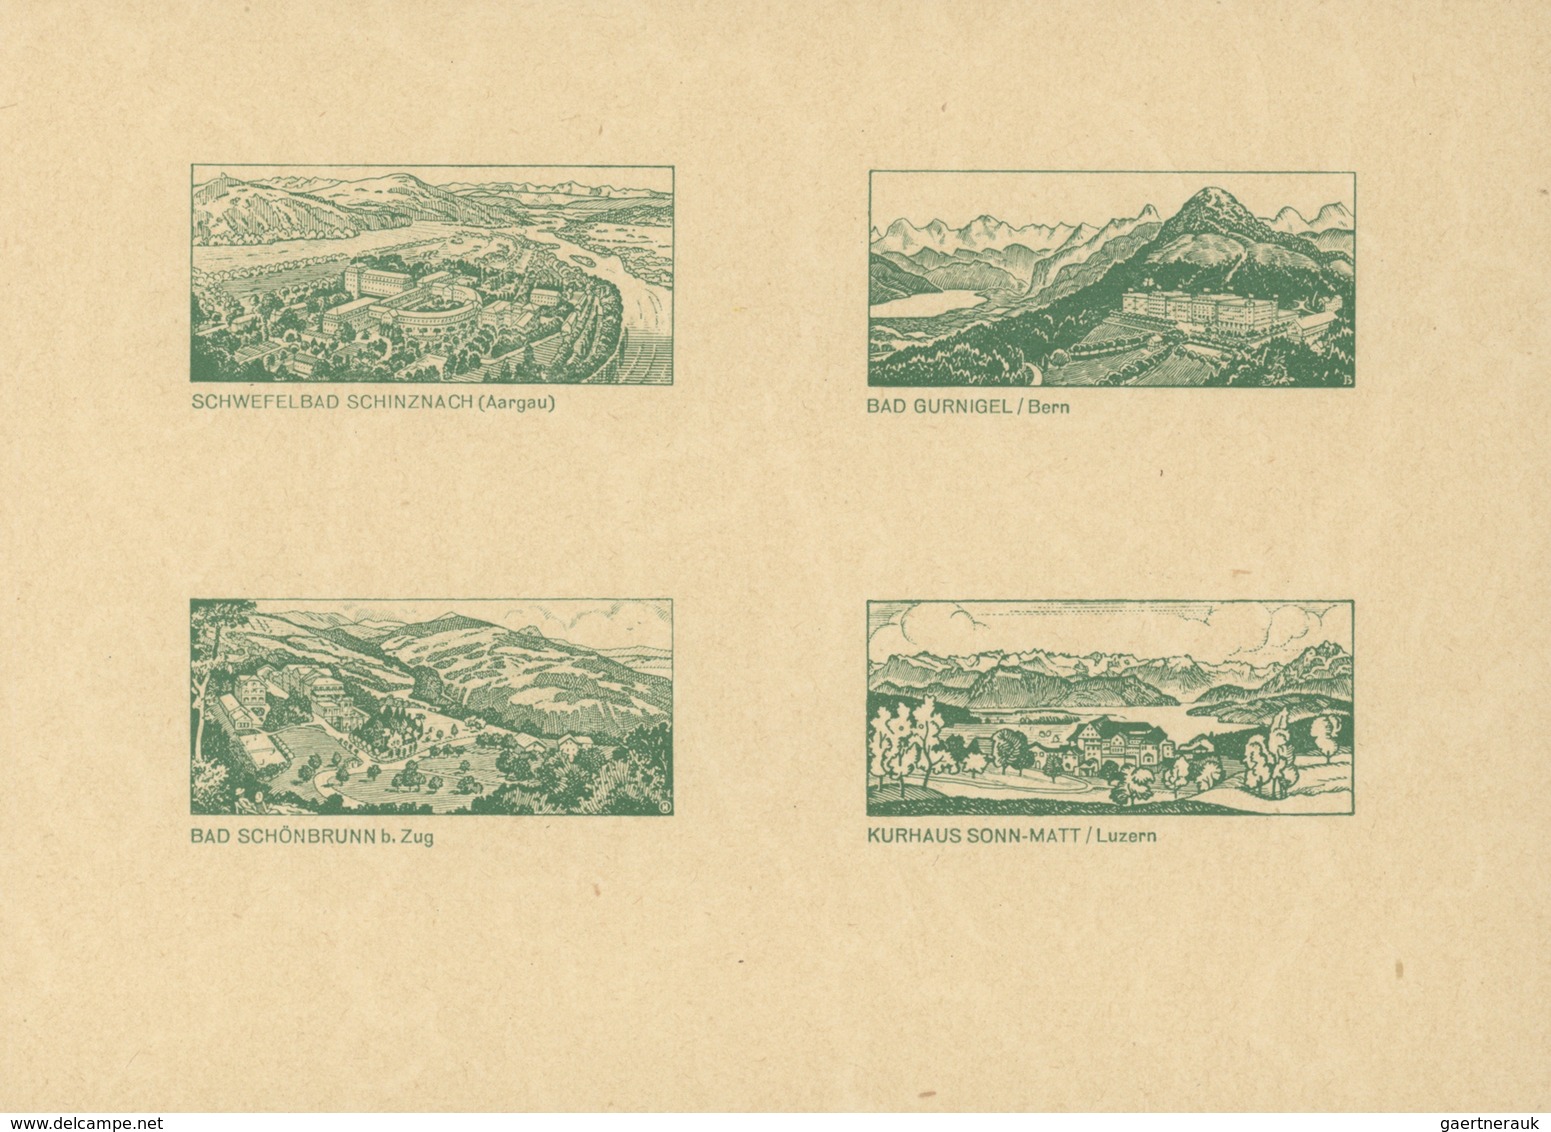 Schweiz - Ganzsachen: 1926 Komplettes Geschenkheft der OPD Bern mit Karten zu 10 Rp. und 20 Rp. in v